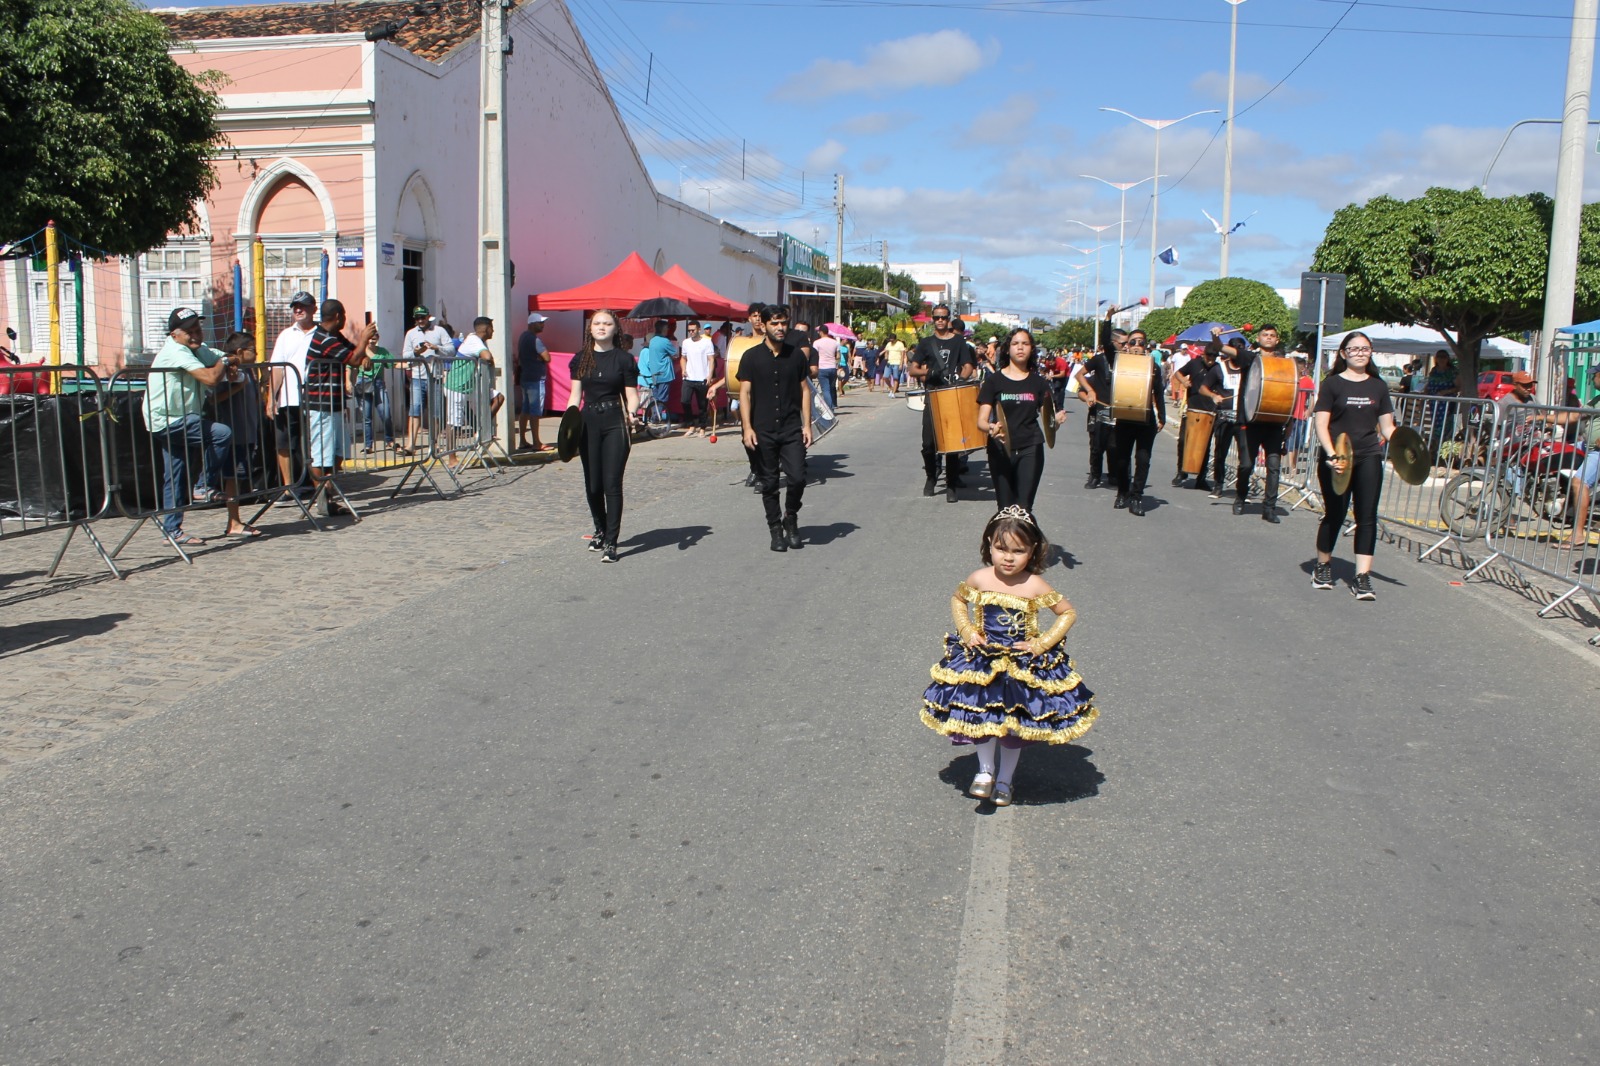 Desfiles-Civicos-em-Monteiro-acontecem-com-grande-presenca-de-publico-e-autoridades-42 Desfiles Cívicos em Monteiro acontecem com grande presença de público e autoridades